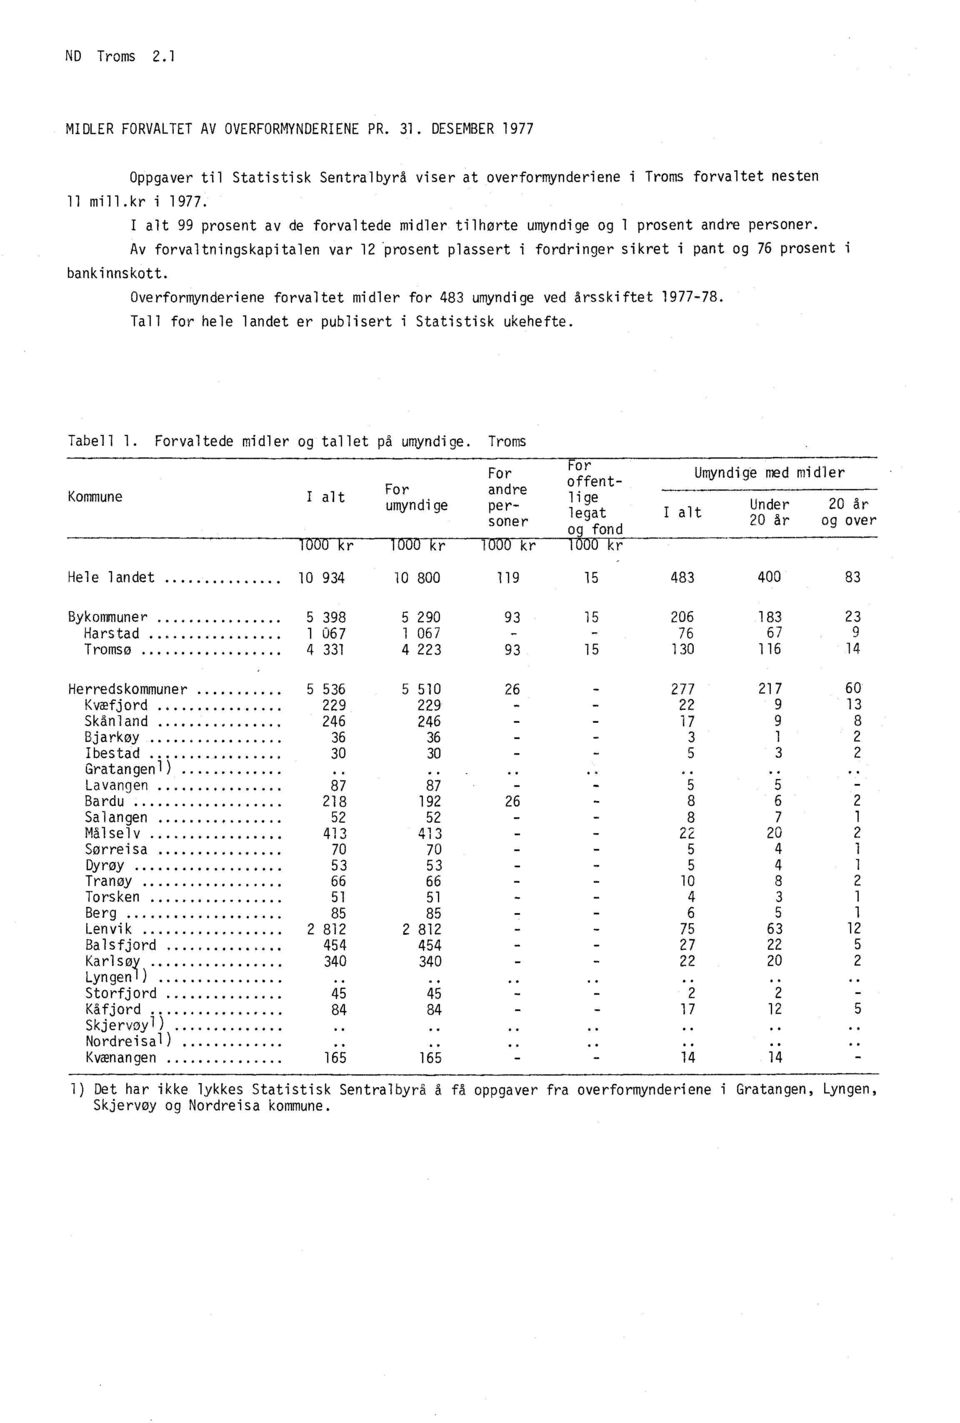 Overformynderiene forvaltet midler for 483 umyndige ved årsskiftet 1977-78. Tall for hele landet er publisert i Statistisk ukehefte. Tabell 1. Forvaltede midler og tallet på umyndige.